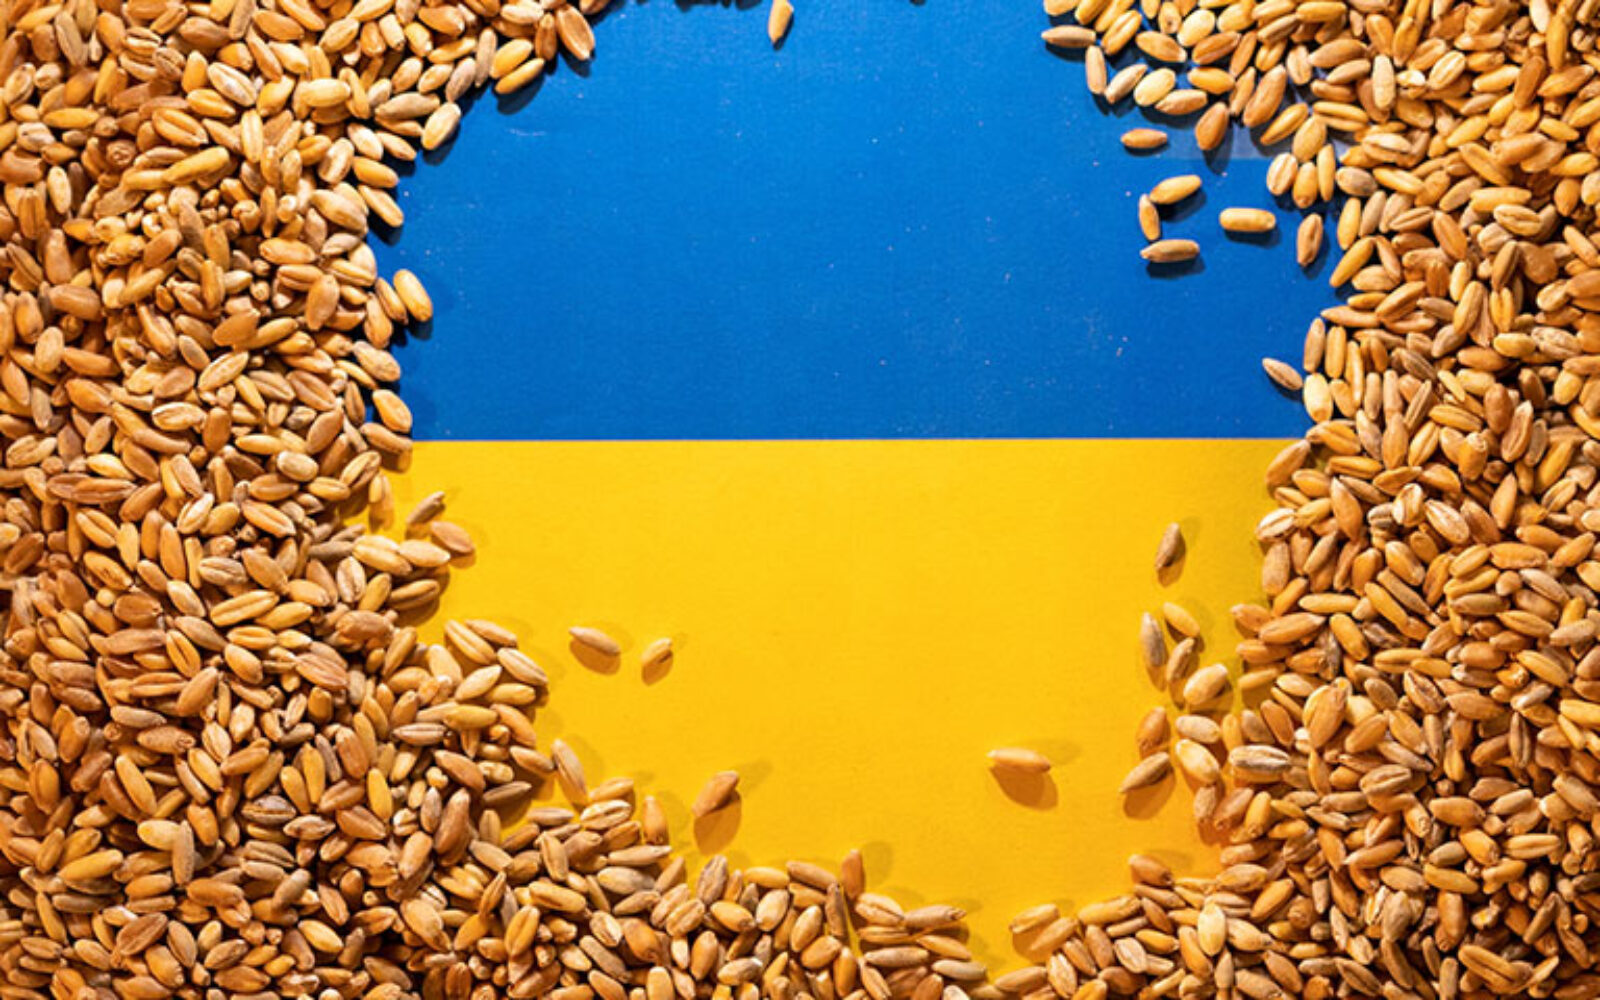 Britanija traži način kako izvesti ukrajinsko žito - Poslovni dnevnik